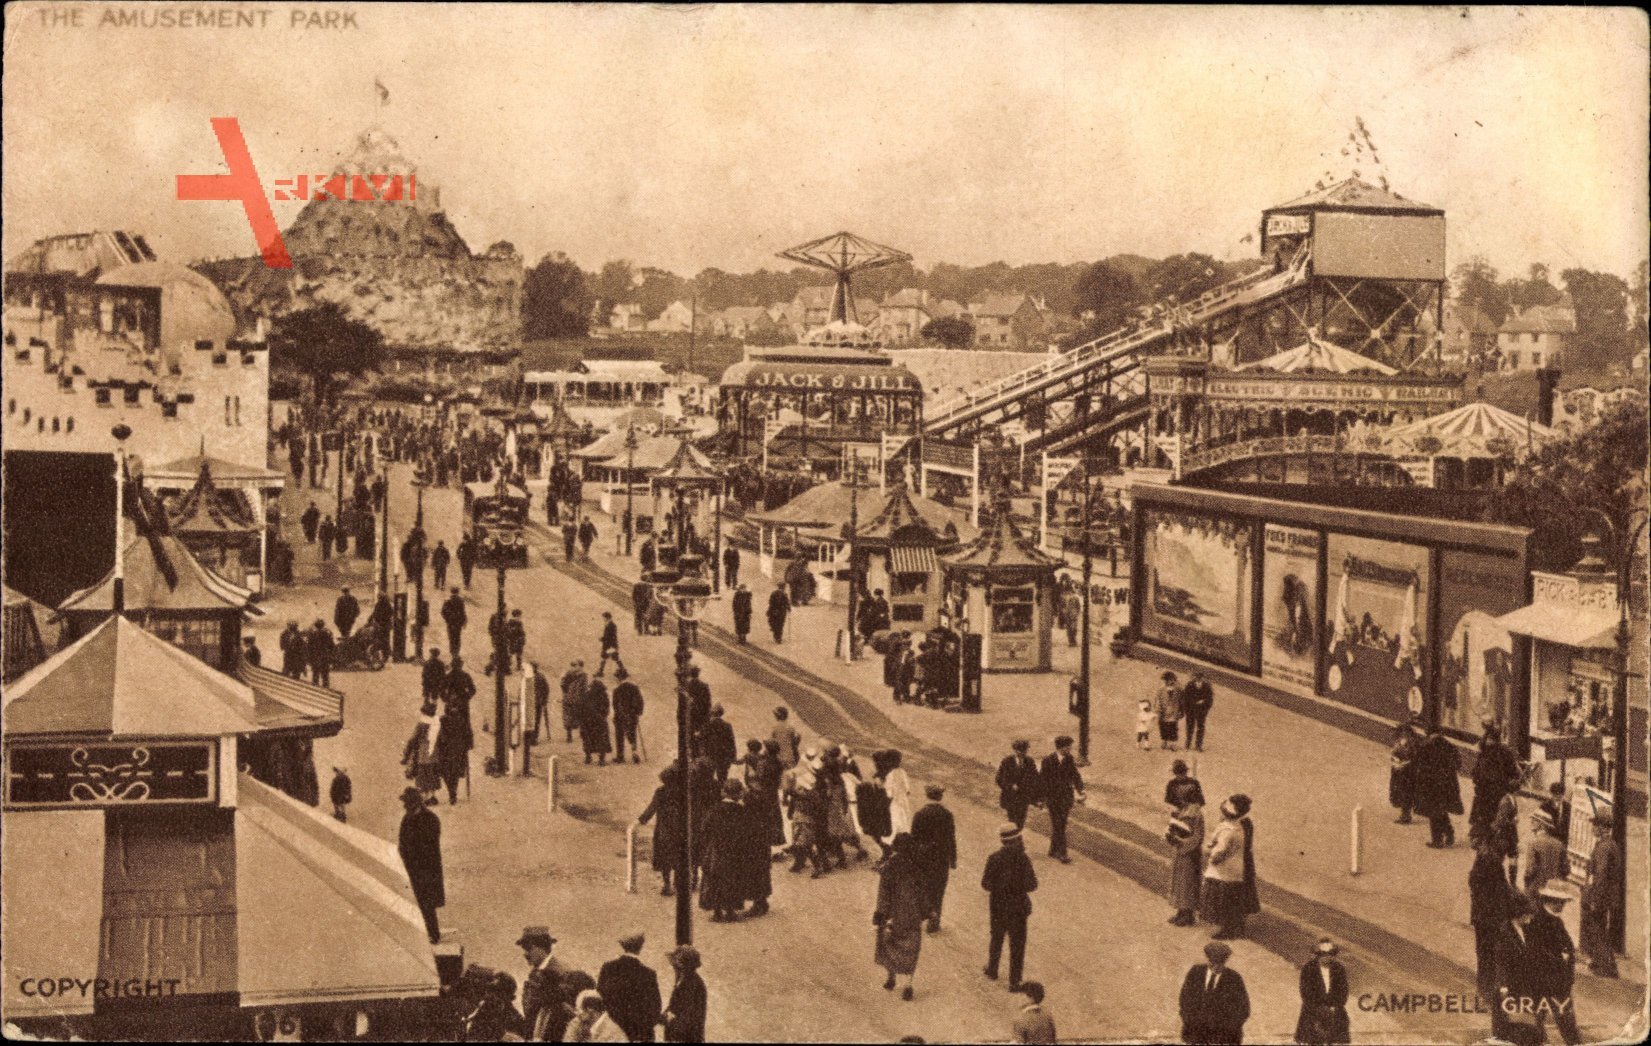 Wembley London, British Empire Exhibition 1924, Amusement Park